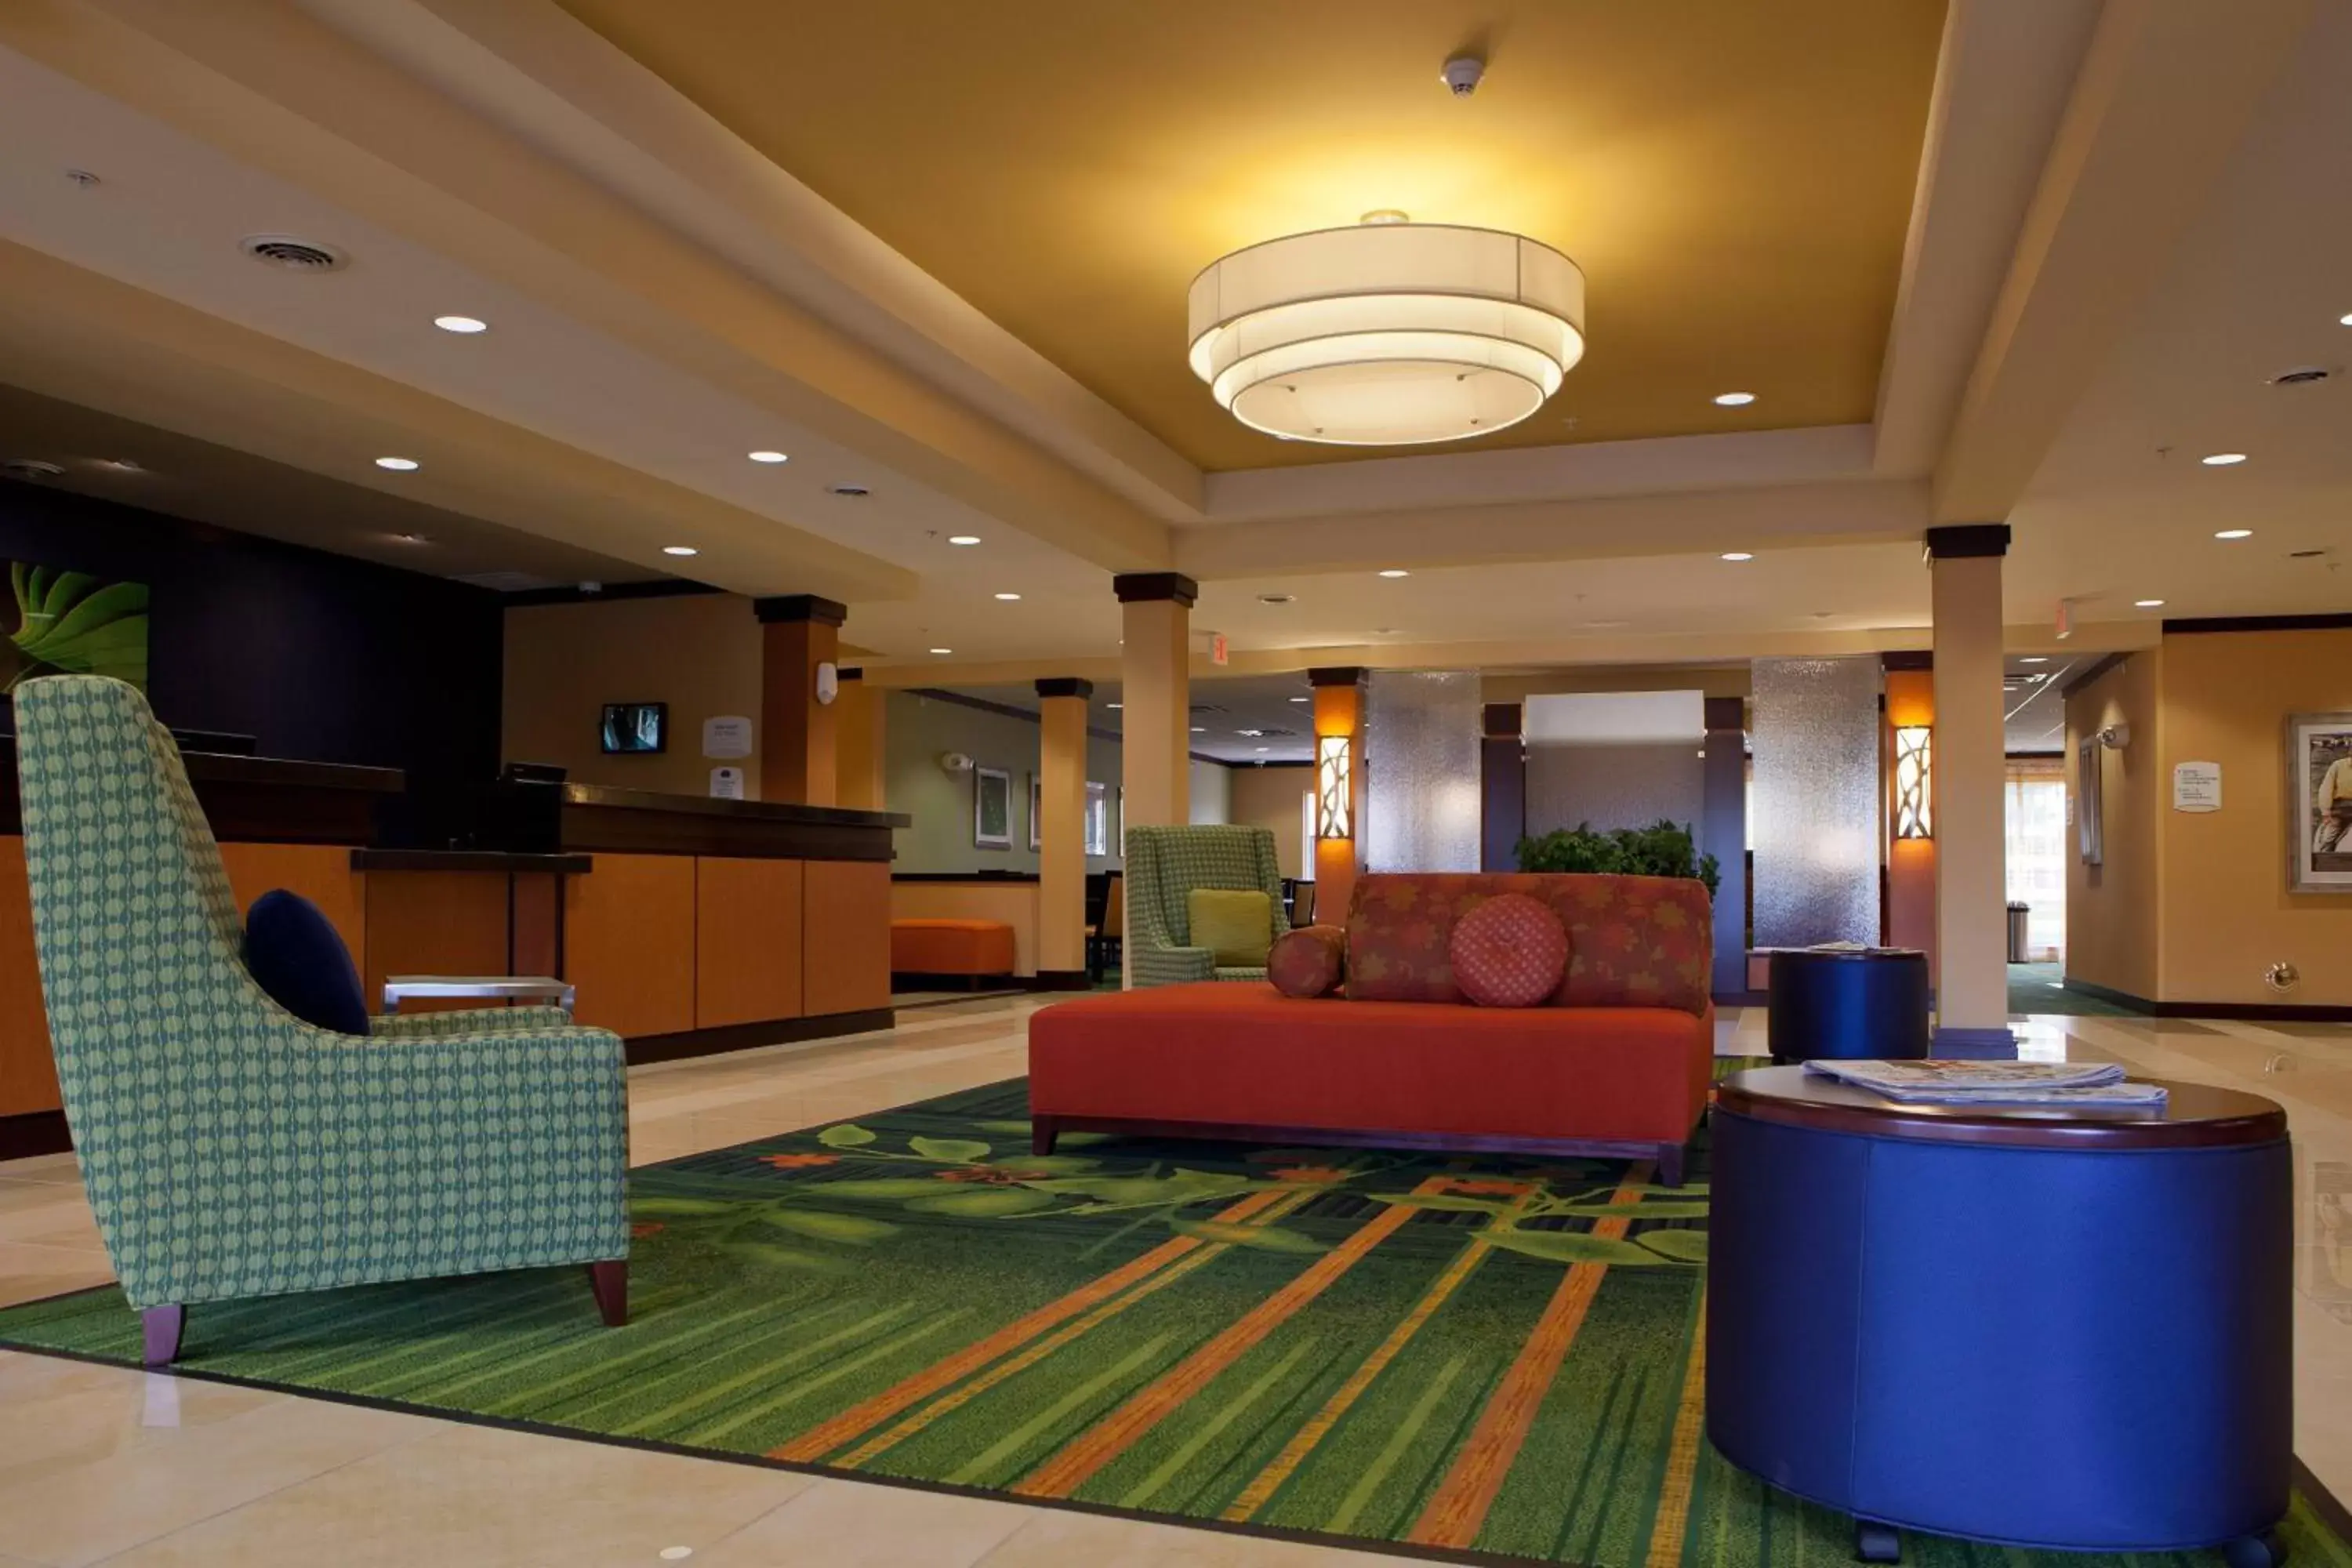 Lobby or reception, Lobby/Reception in Fairfield Inn and Suites Flint Fenton